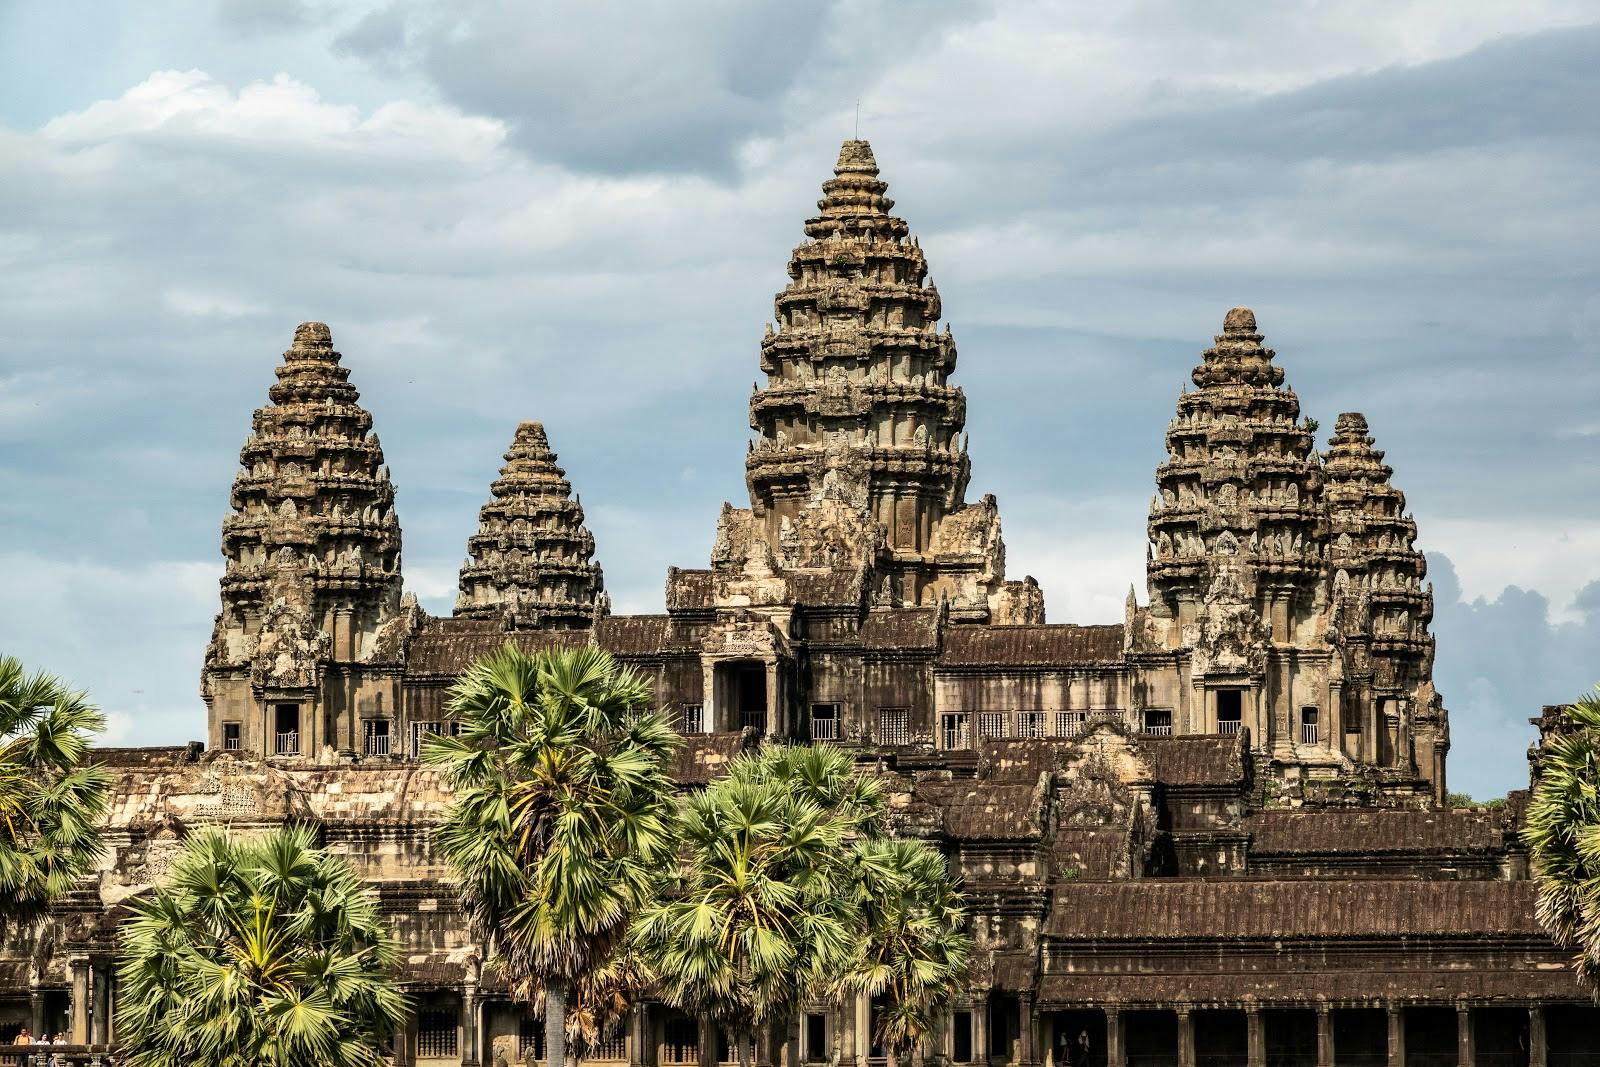 Image - Angkor Wat